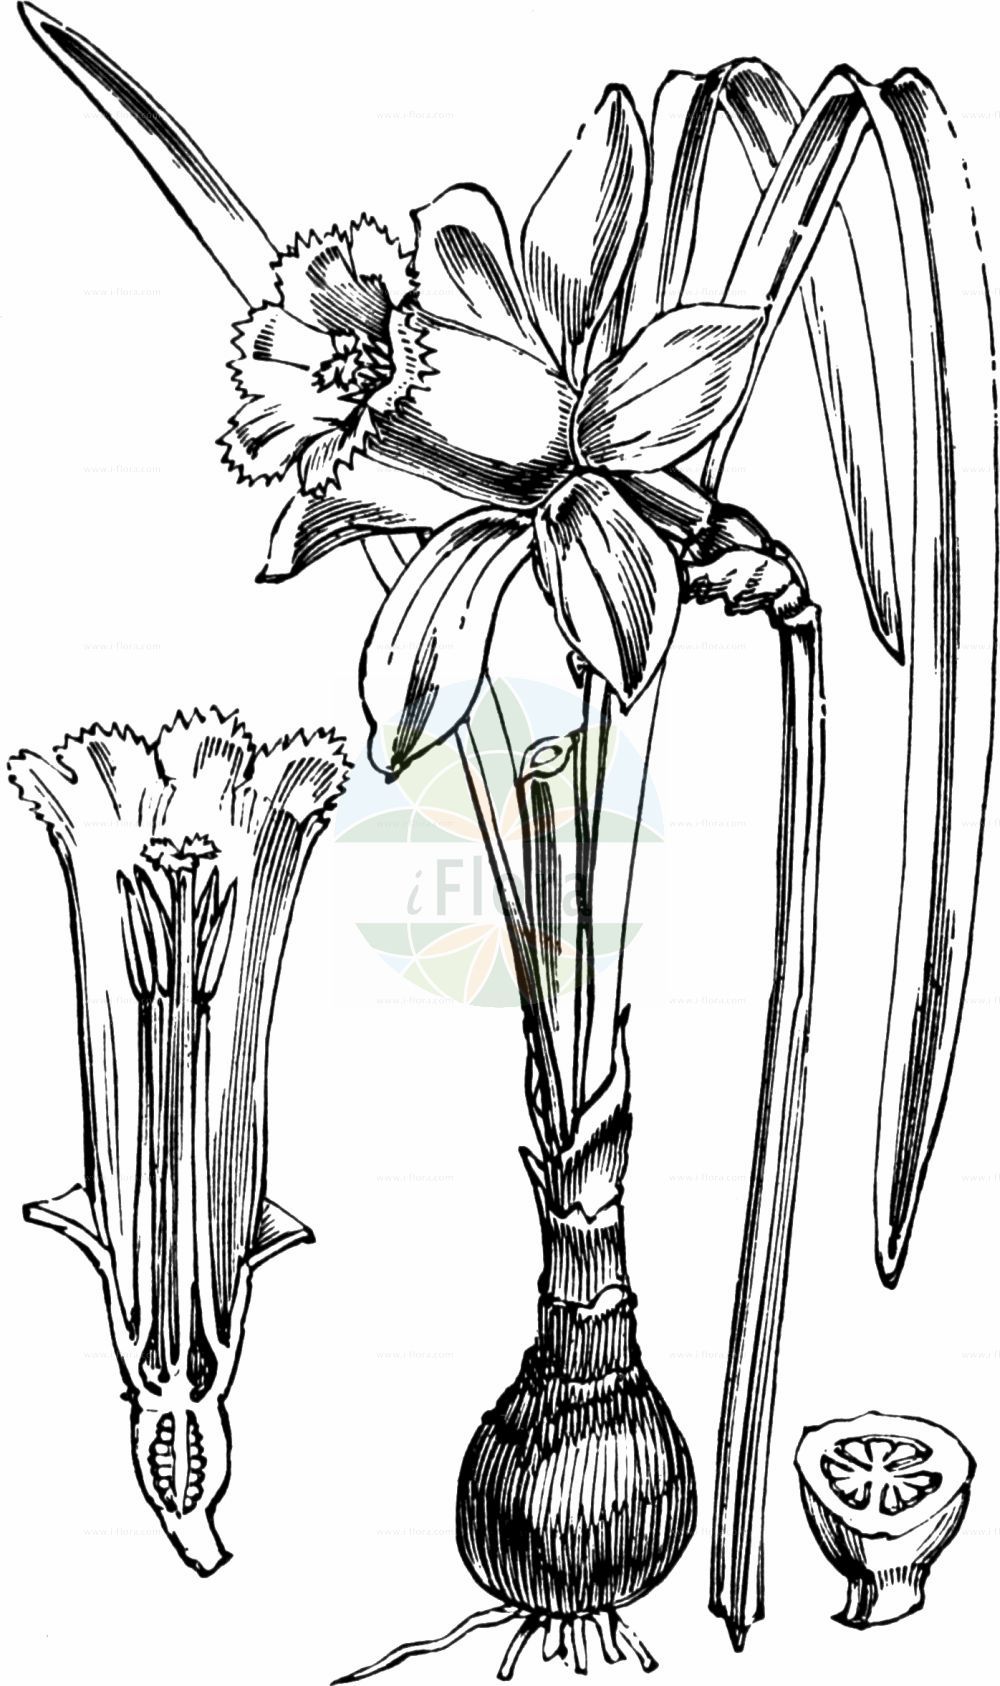 Historische Abbildung von Narcissus pseudonarcissus (Gelbe Narzisse - Spanish Daffodil). Das Bild zeigt Blatt, Bluete, Frucht und Same. ---- Historical Drawing of Narcissus pseudonarcissus (Gelbe Narzisse - Spanish Daffodil). The image is showing leaf, flower, fruit and seed.(Narcissus pseudonarcissus,Gelbe Narzisse,Spanish Daffodil,Ajax pseudonarcissus,Narcissus pseudonarcissus,Gelbe Narzisse,Spanish Daffodil,Daffodil,Lent Lily,Wild Daffodil,Wild Lent Lily,Wild Narcissus,Yellow Daffodil,Narcissus,Narzisse,Daffodils,Amaryllidaceae,Narzissengewächse,Amaryllis family,Blatt,Bluete,Frucht,Same,leaf,flower,fruit,seed,Fitch et al. (1880))